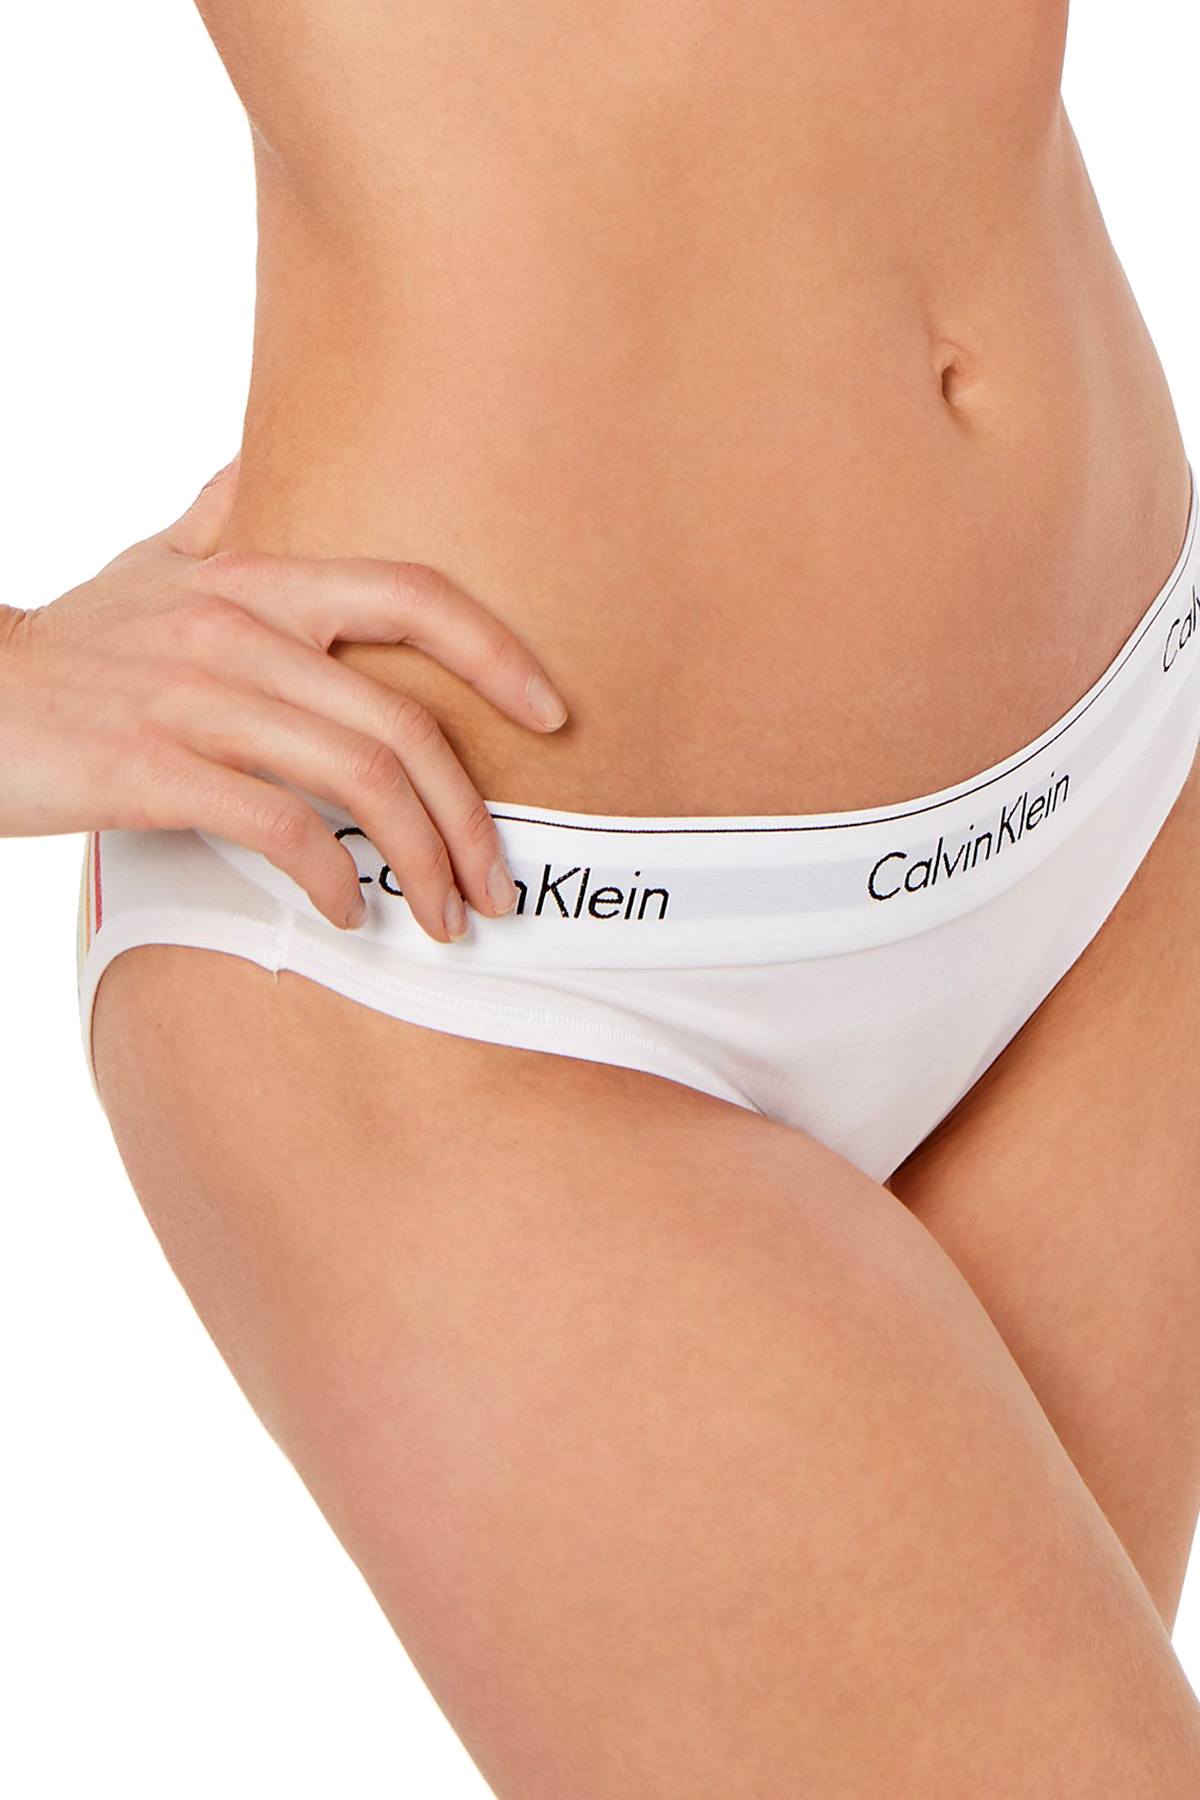 Calvin Klein White Pride Limited Edition Modern Cotton Rainbow